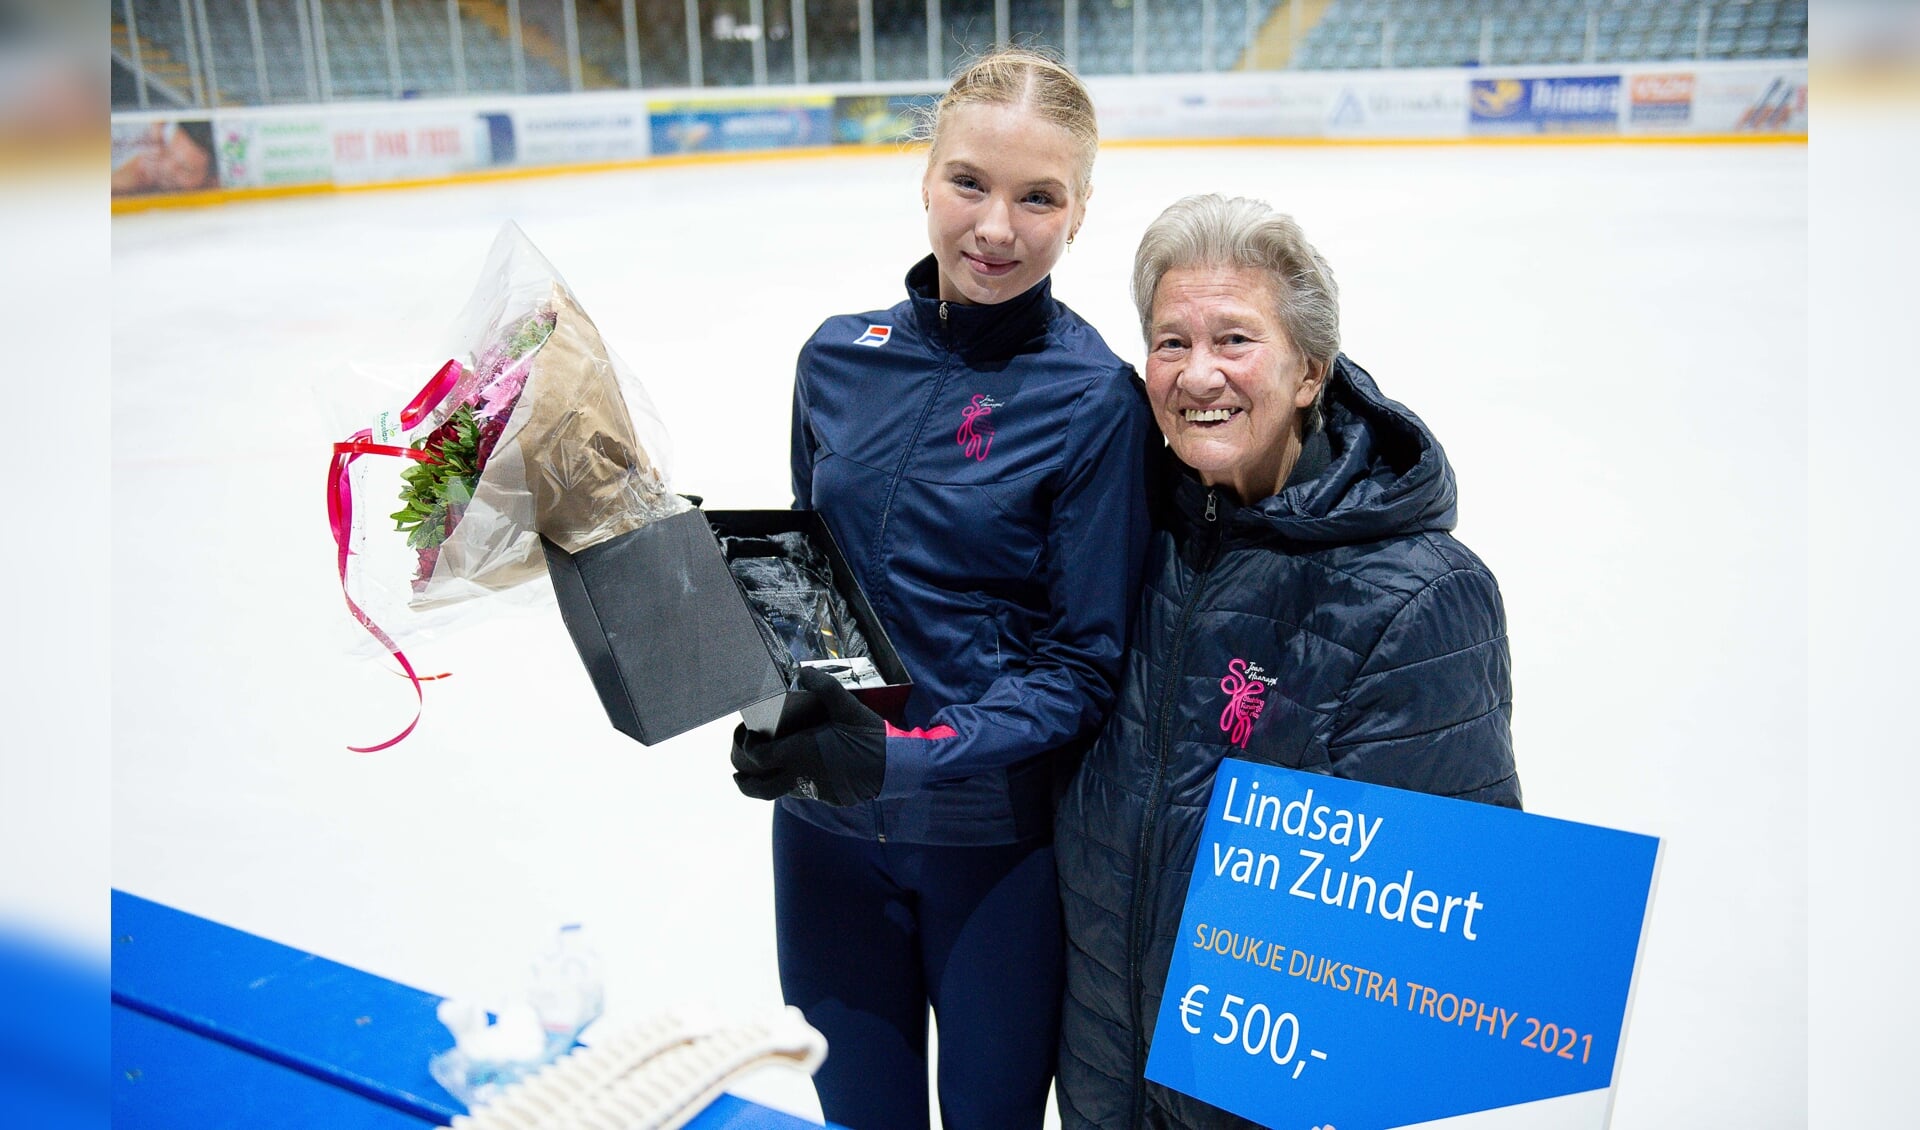 Lindsay van Zundert heeft zojuist de Sjoukje Dijkstra Trophy 2021 ontvangen uit handen van de naamgeefster